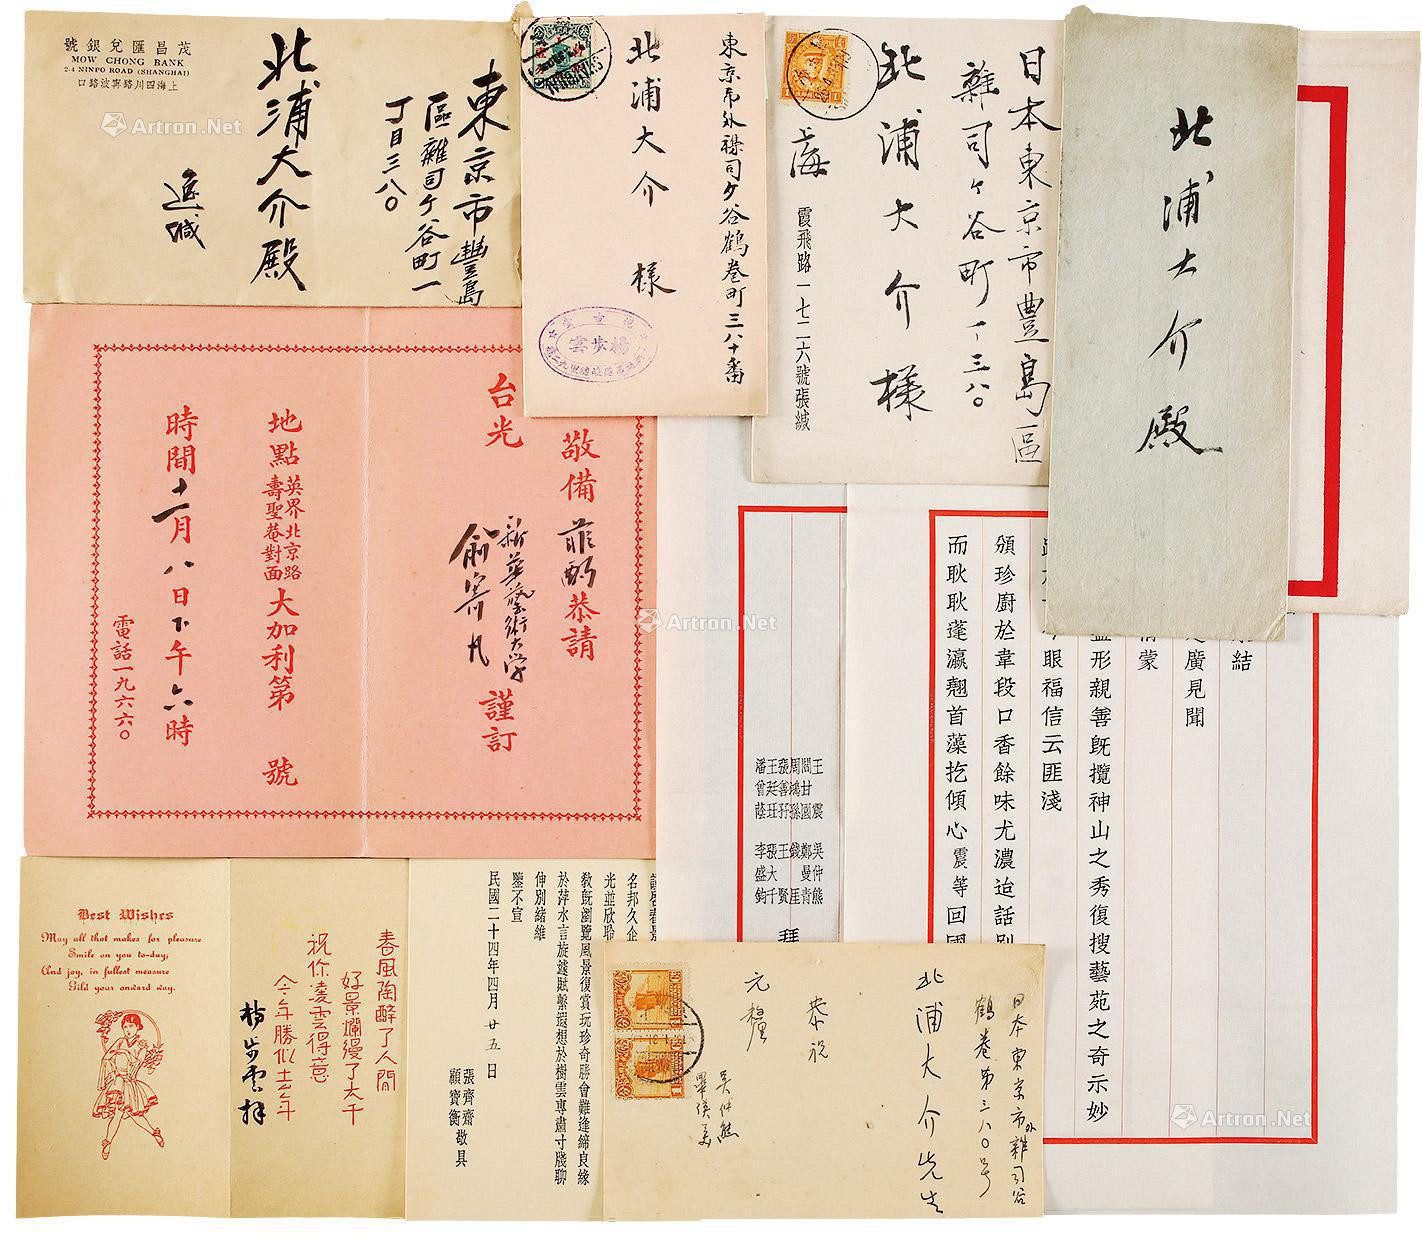 Signed greeting card invitation of Zhang Daqian， Zhang Shazi， Gu Baoheng， Wu Zhongxiong， Bi Yingmei， Wang Zhen， Yu Jifan， Yang Buyun， etc， with original covers